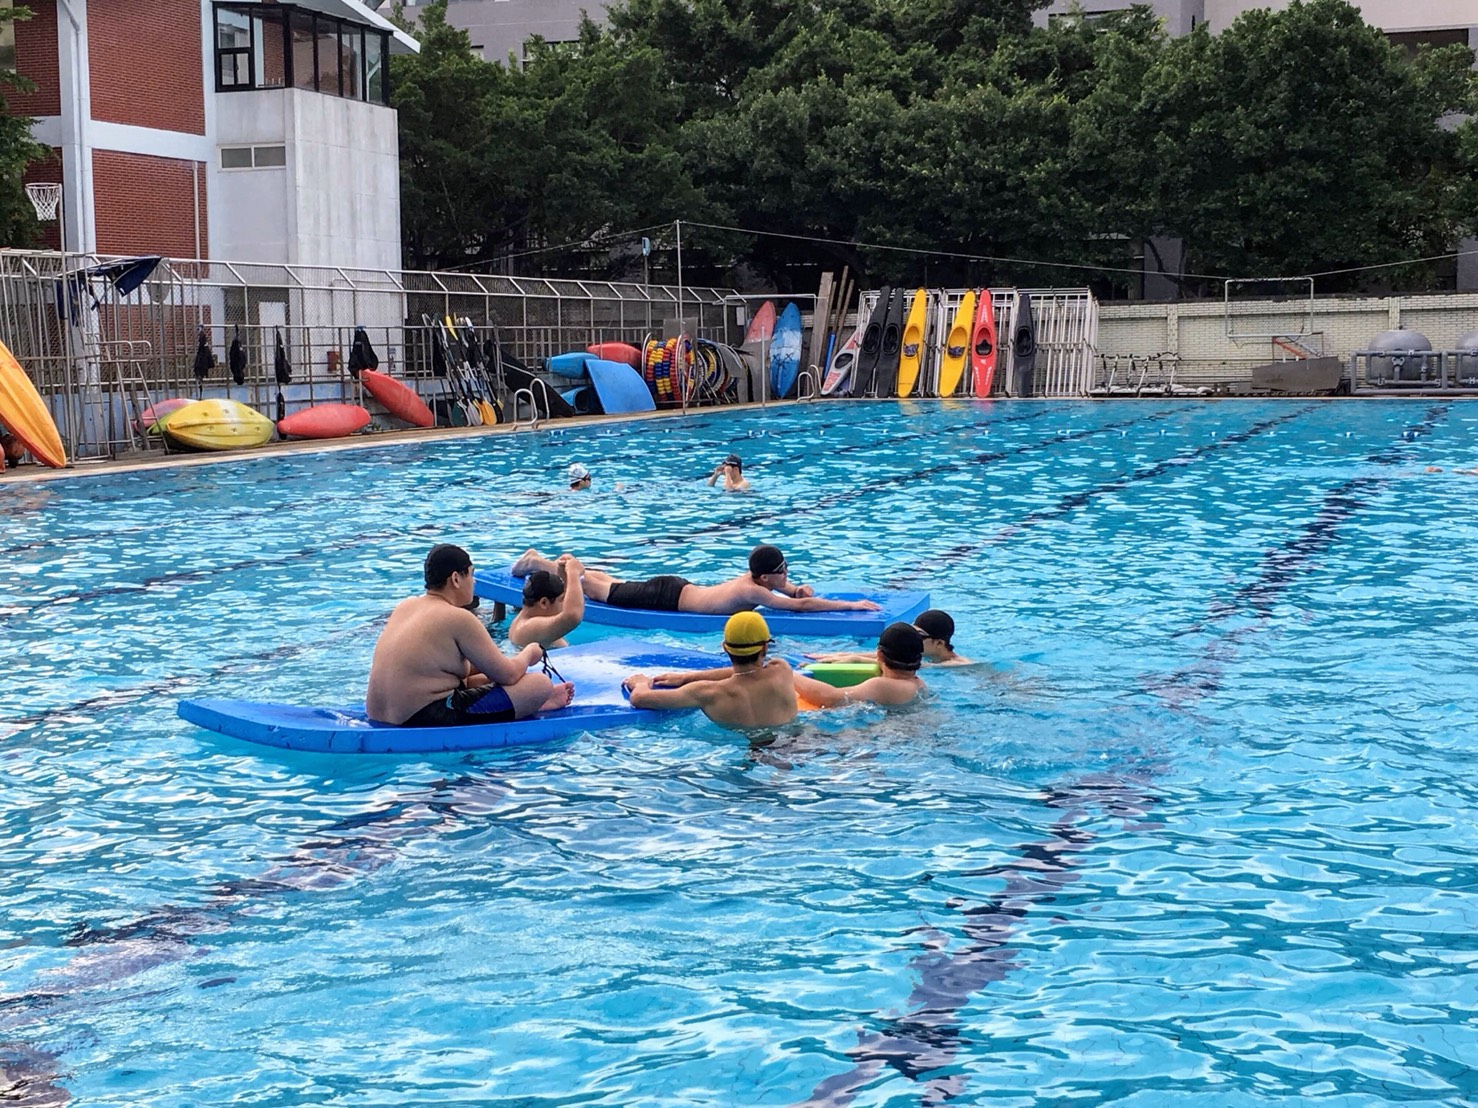 歡迎踴躍使用聖約翰科大泳池及場館，並透過游泳得到各項益處，健全身心靈